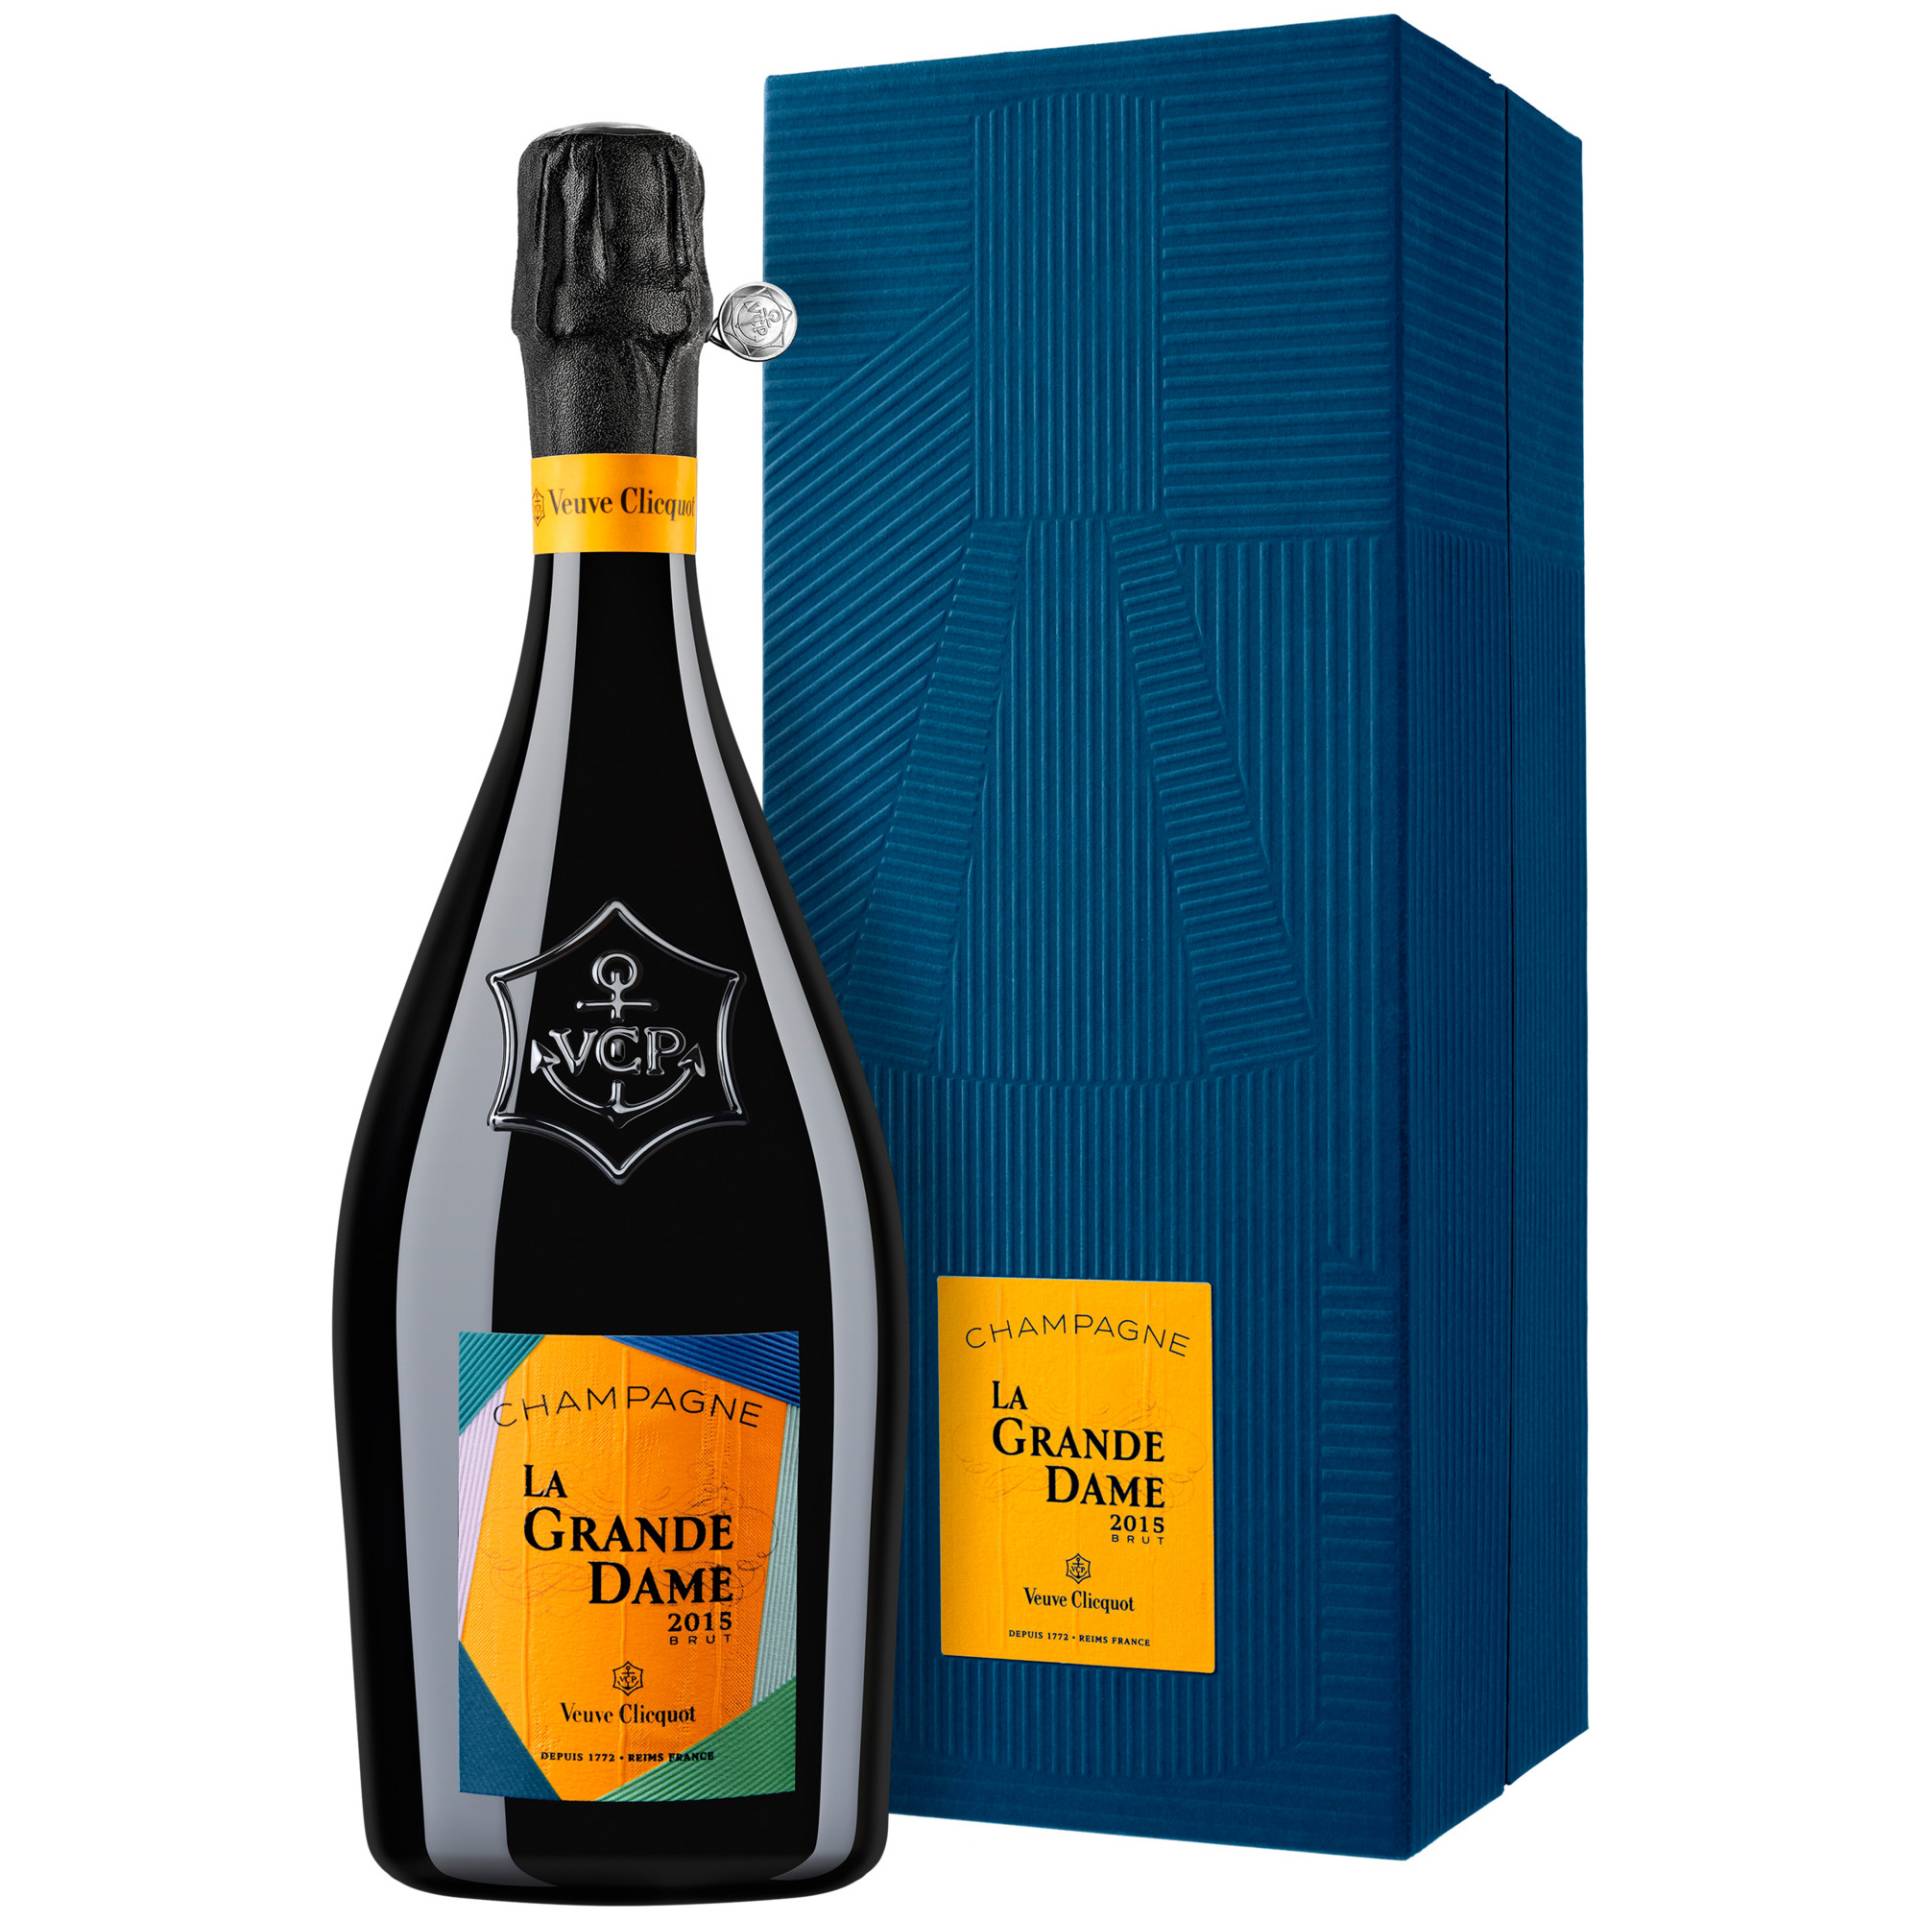 Champagne La Grande Dame Paola Paronetto, Brut, Champagne AC, Geschenketui, Champagne, 2015, Schaumwein von Champagne Veuve Clicquot, 51100 Reims, France